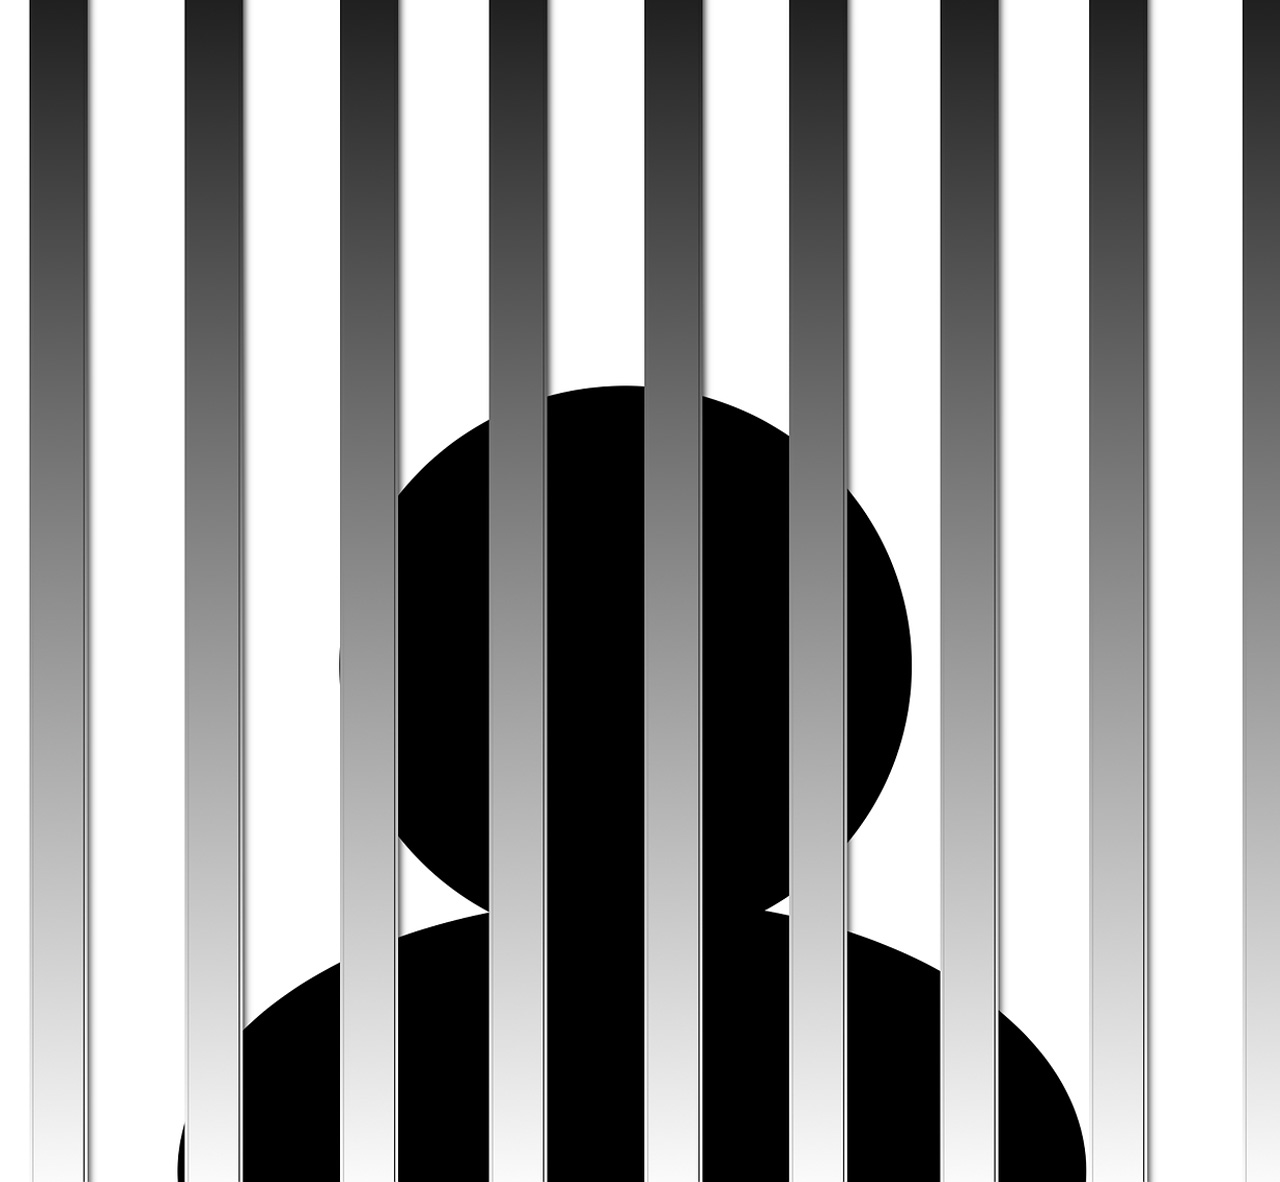 Les sanctions après la remise d’un objet à un prisonnier, selon le code pénal nigérien